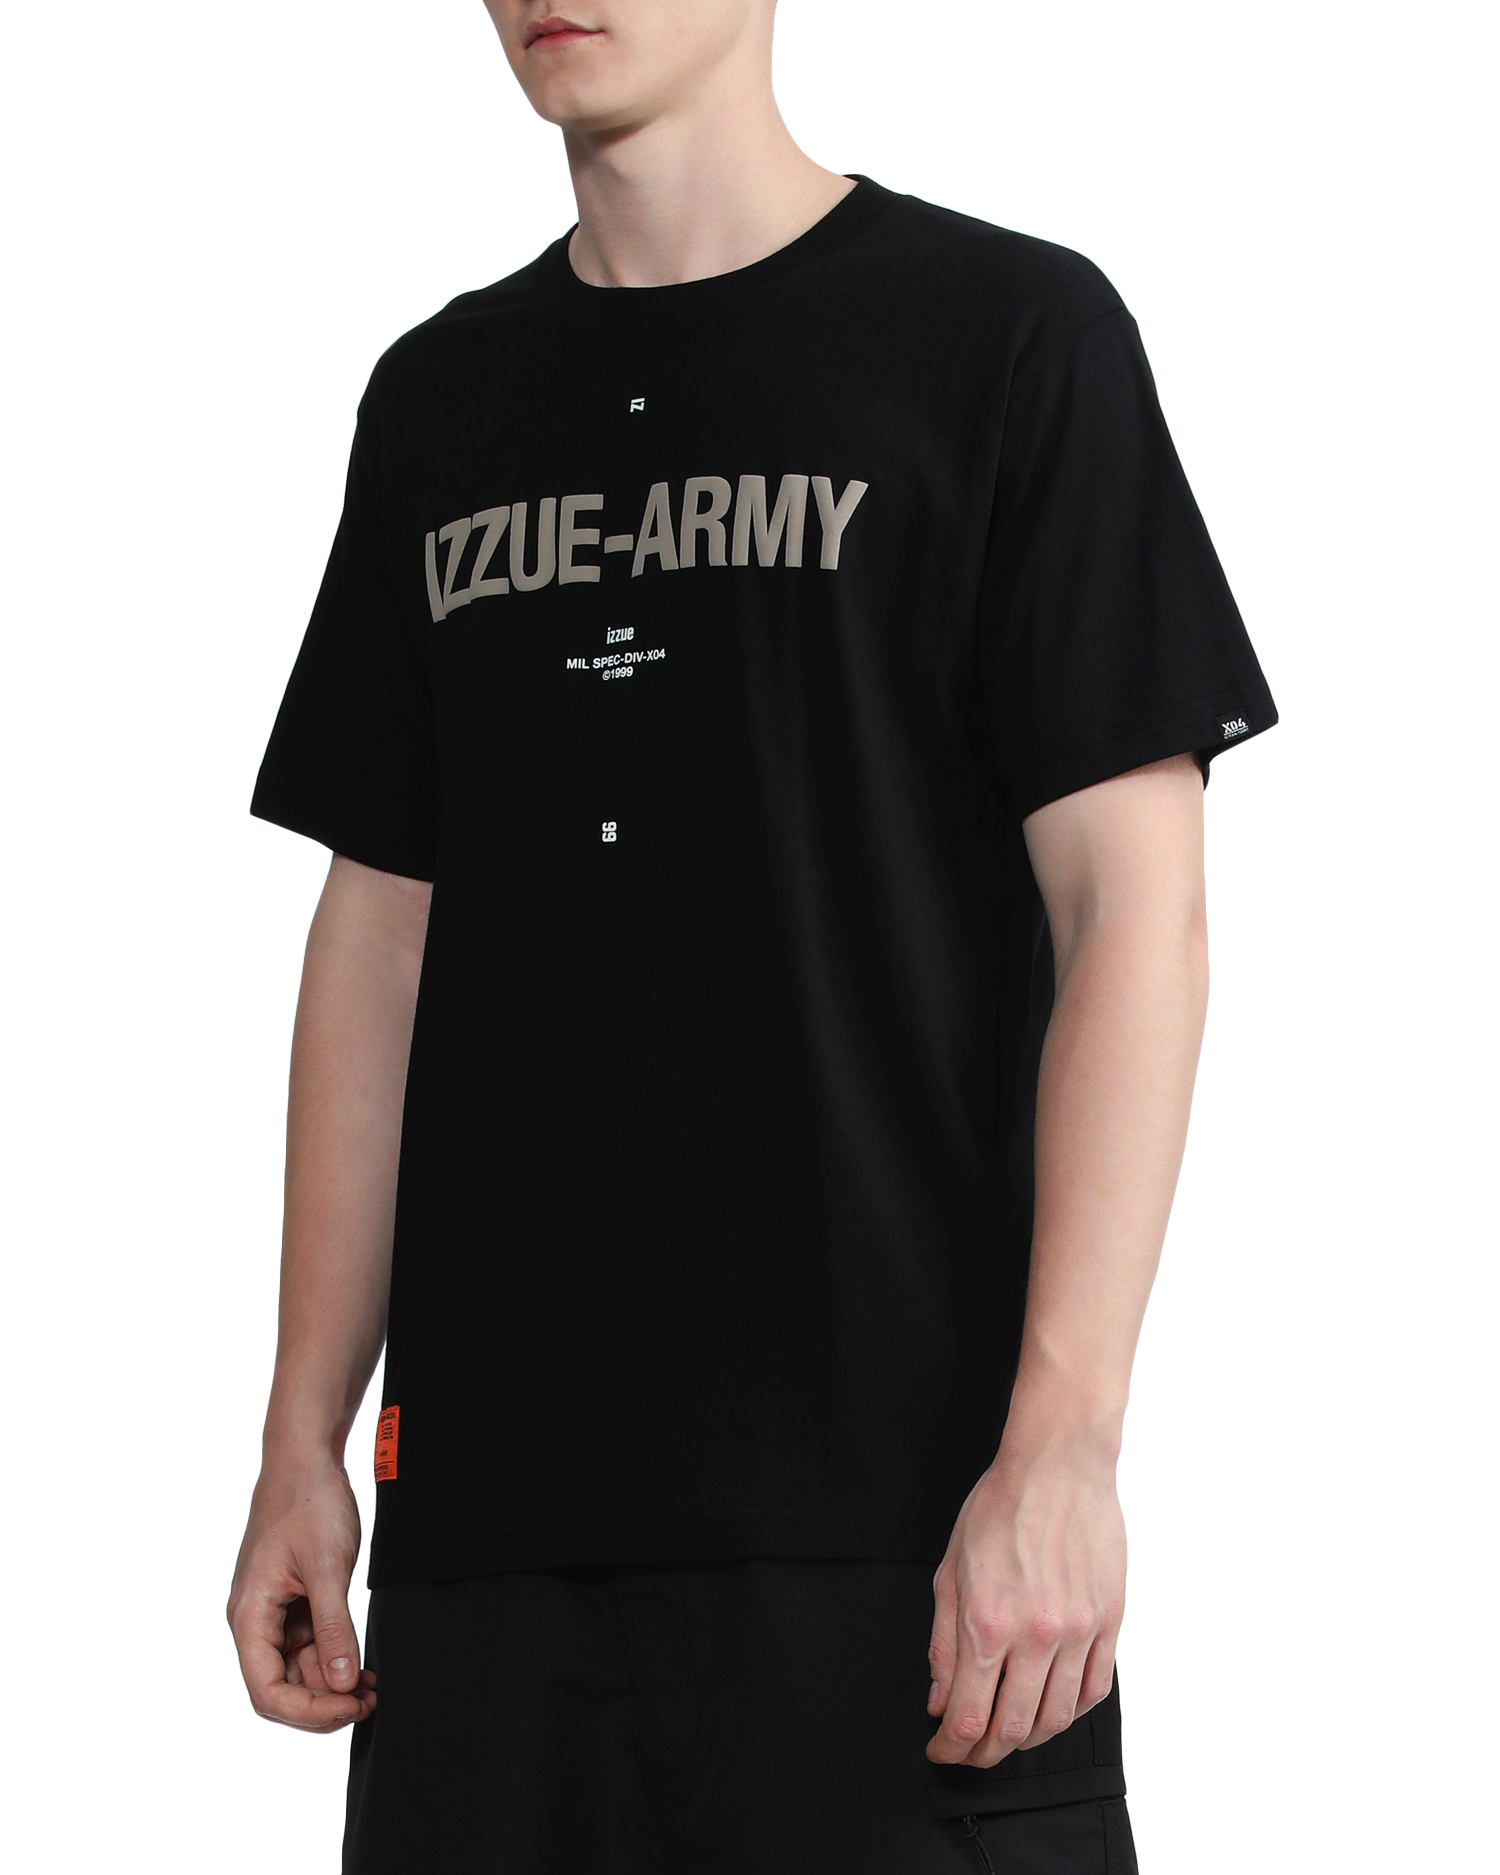 army衣服价位图片